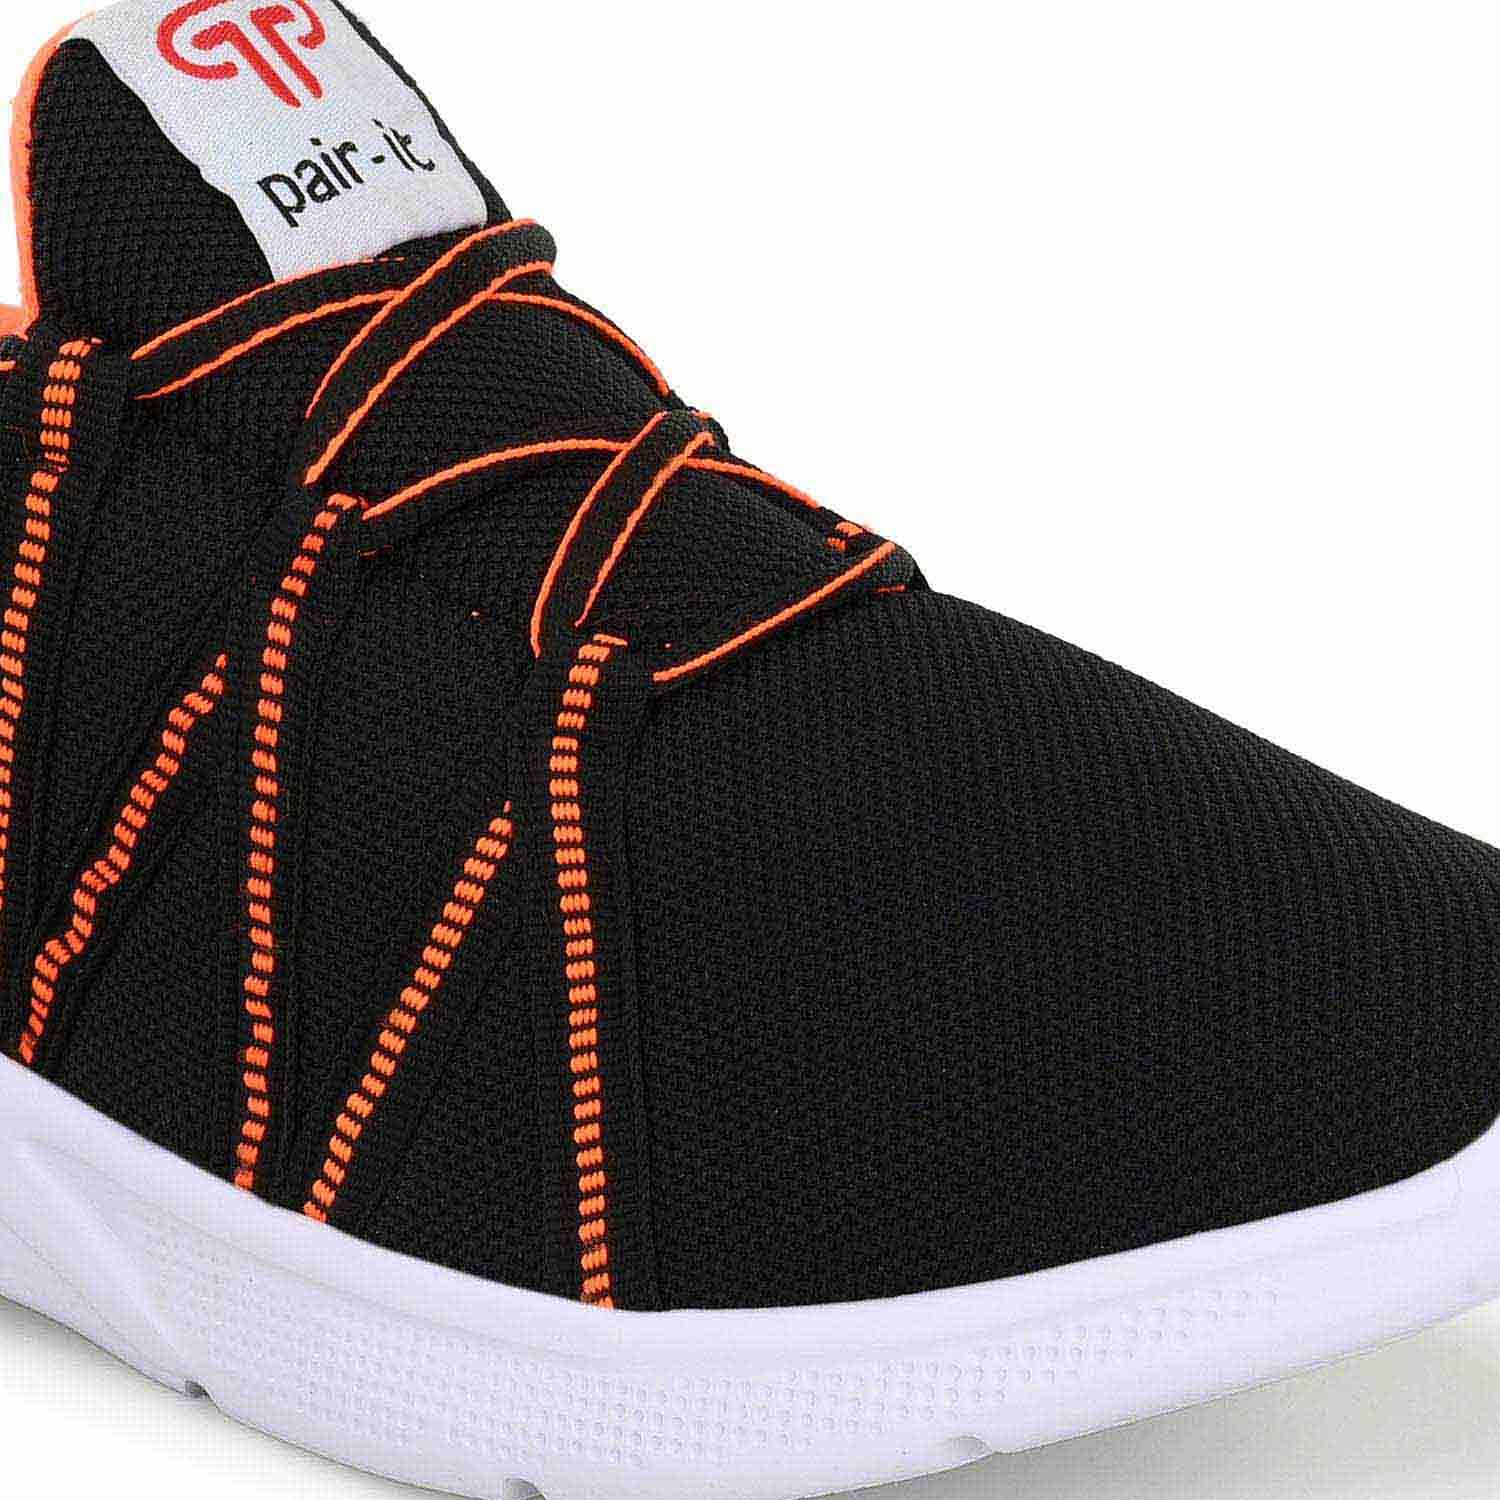 Pair-it Men's Sports Shoes-LZ-Presto-112-Black